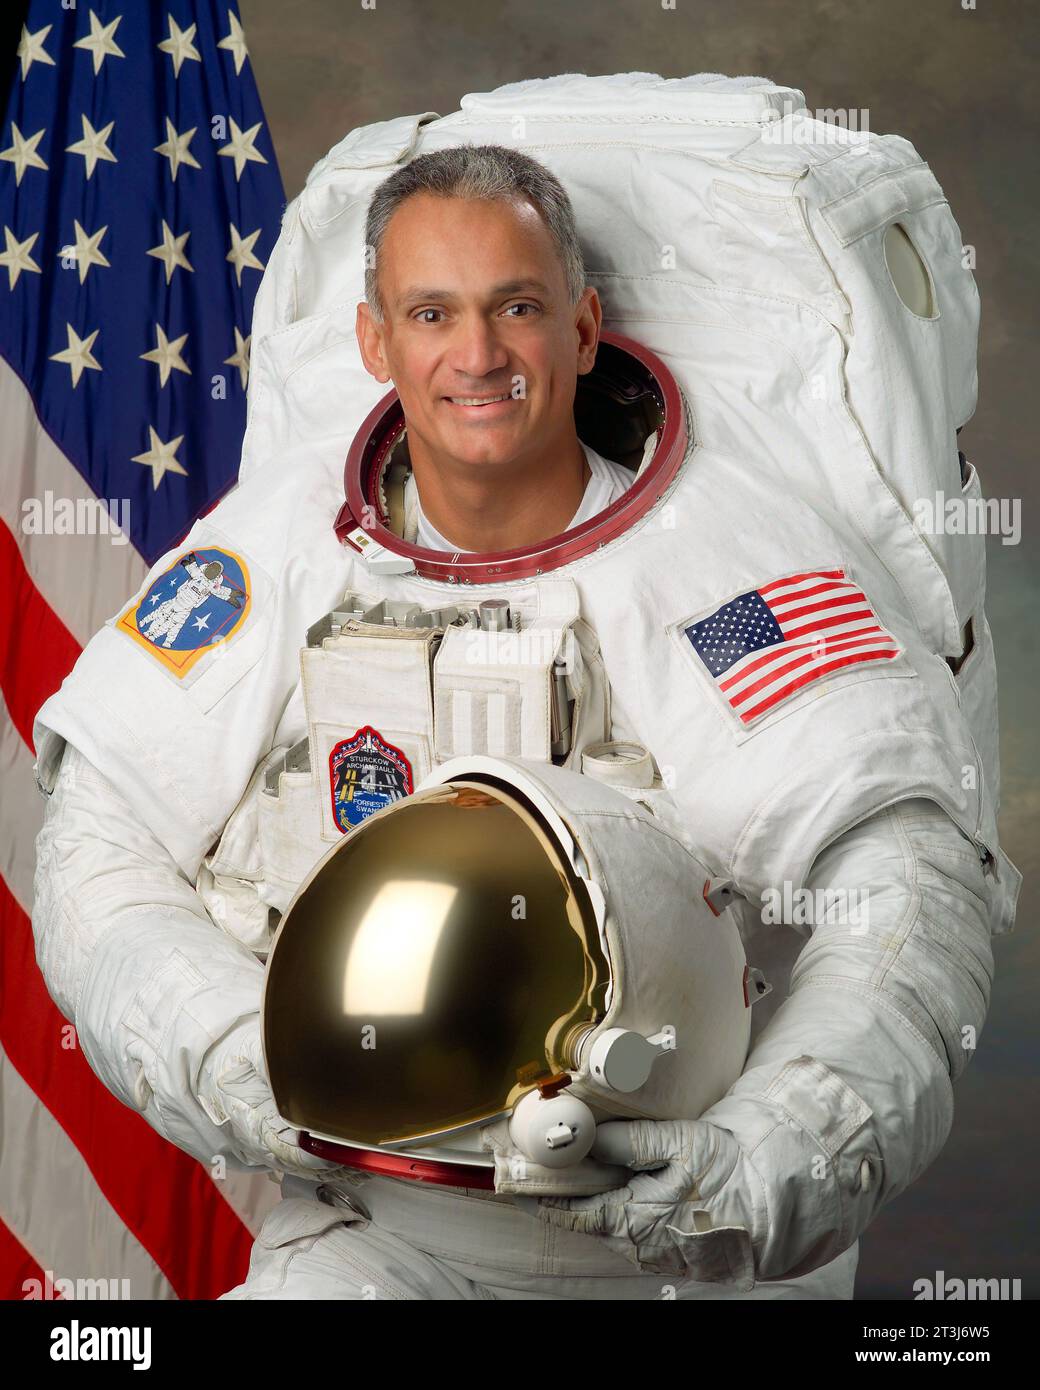 Official Portrait of Astronaut John D. (Danny) Olivas Stock Photo